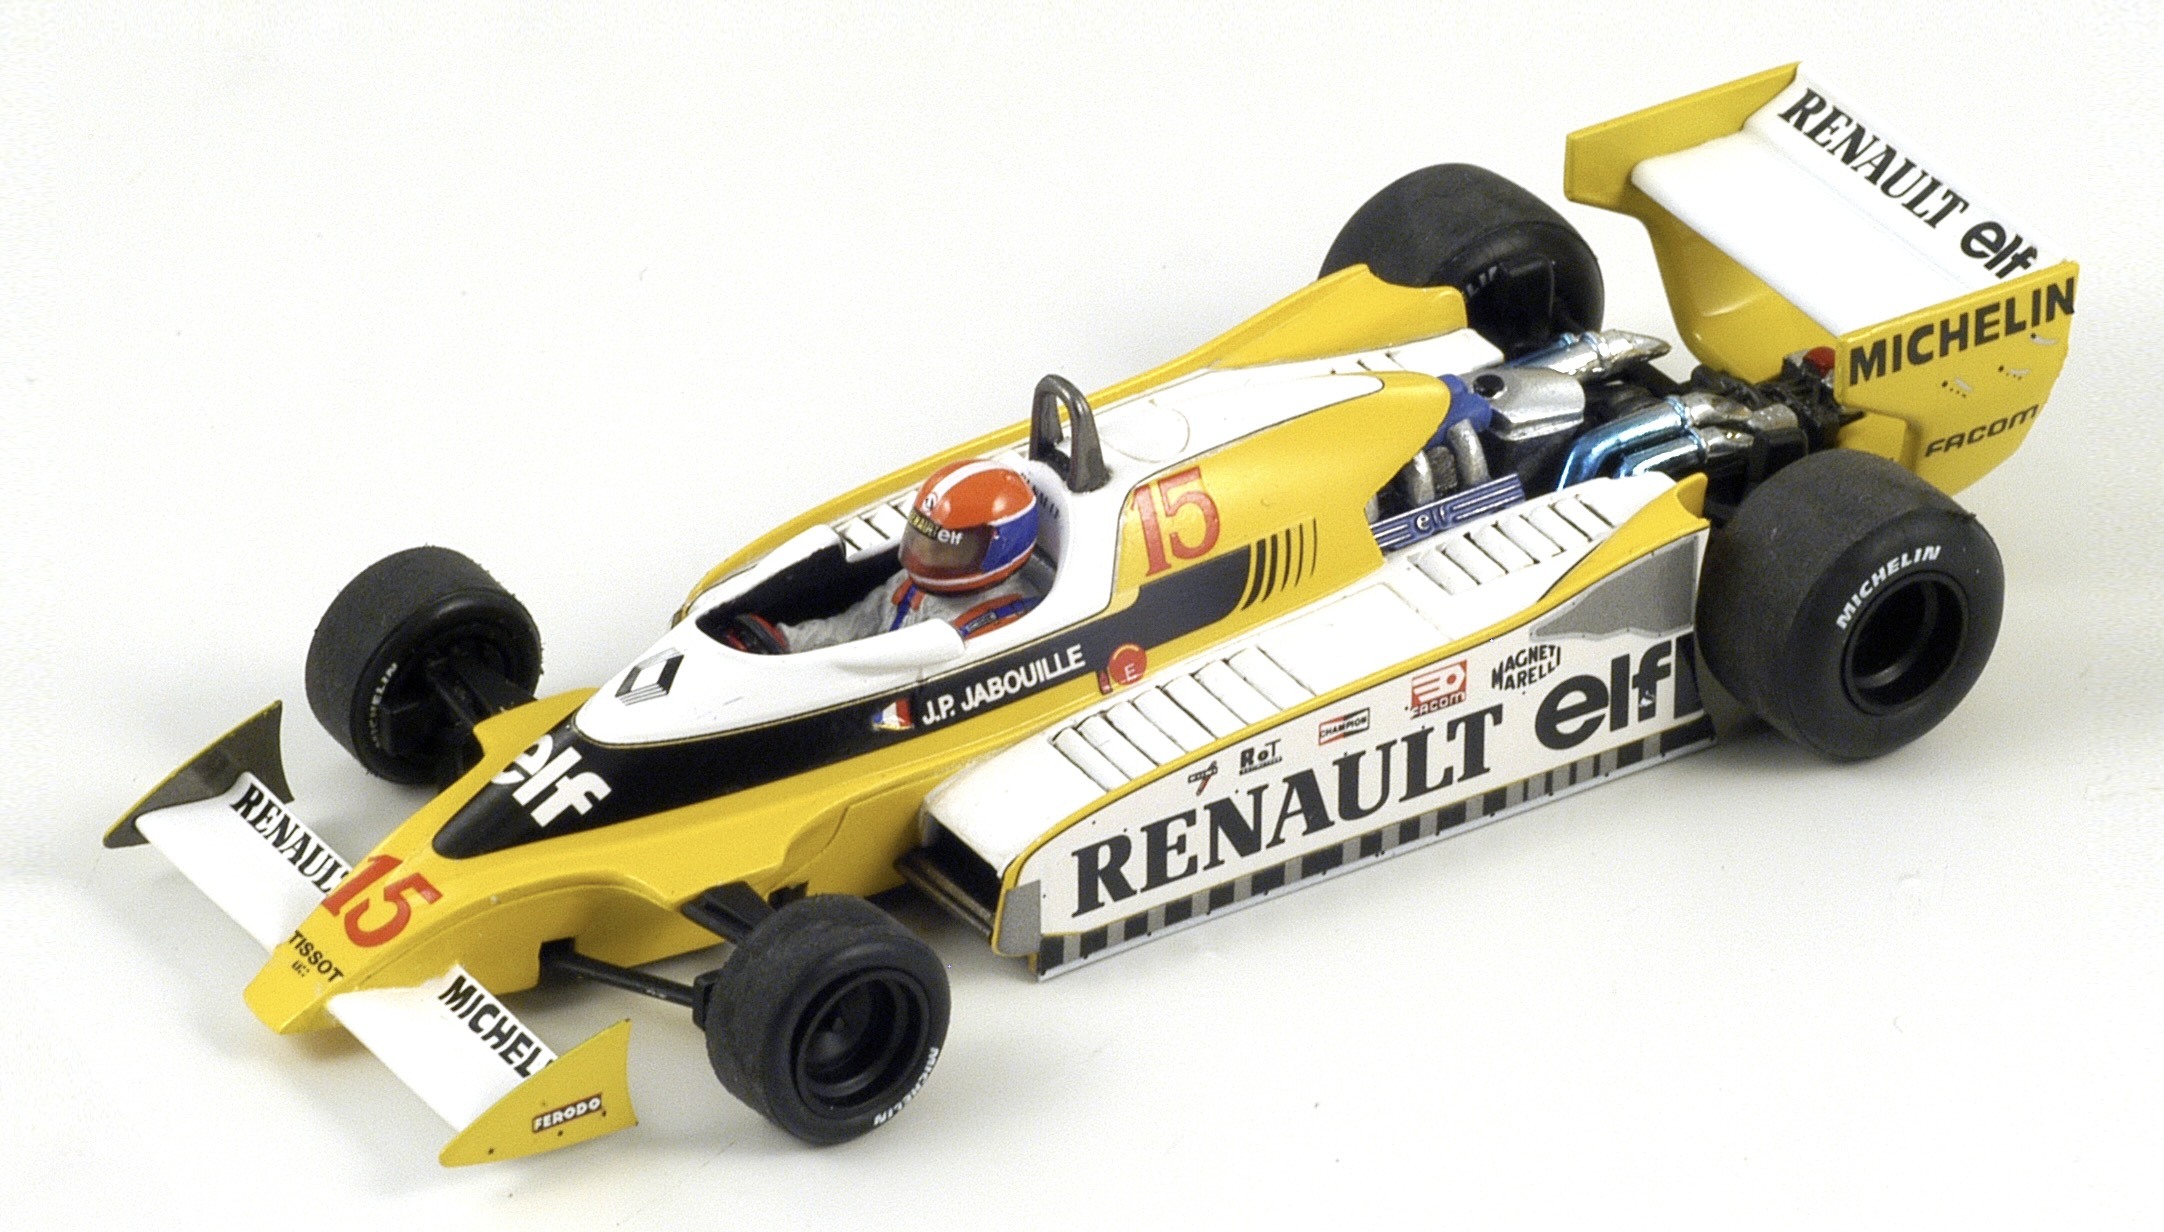 Renault F1 RS11 - Modelauto schaal 1:18